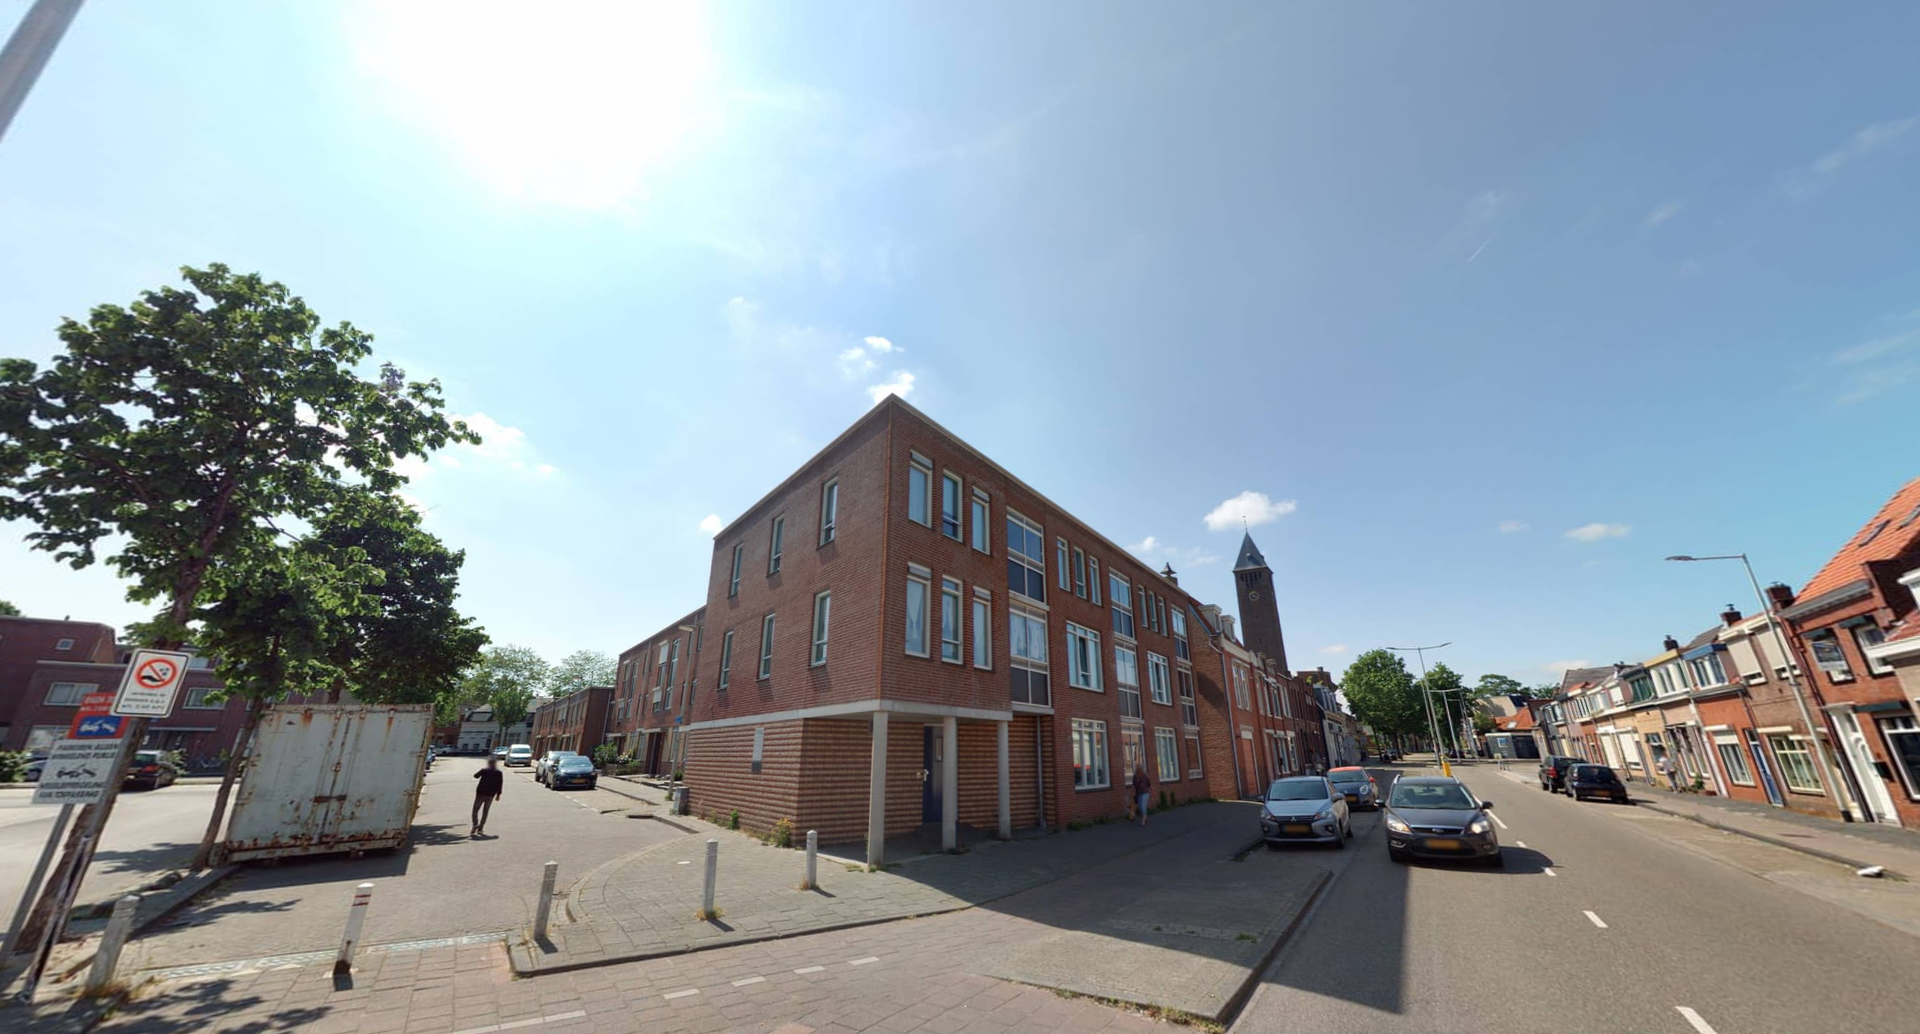 Koningin Julianastraat 14, 4615 KB Bergen op Zoom, Nederland